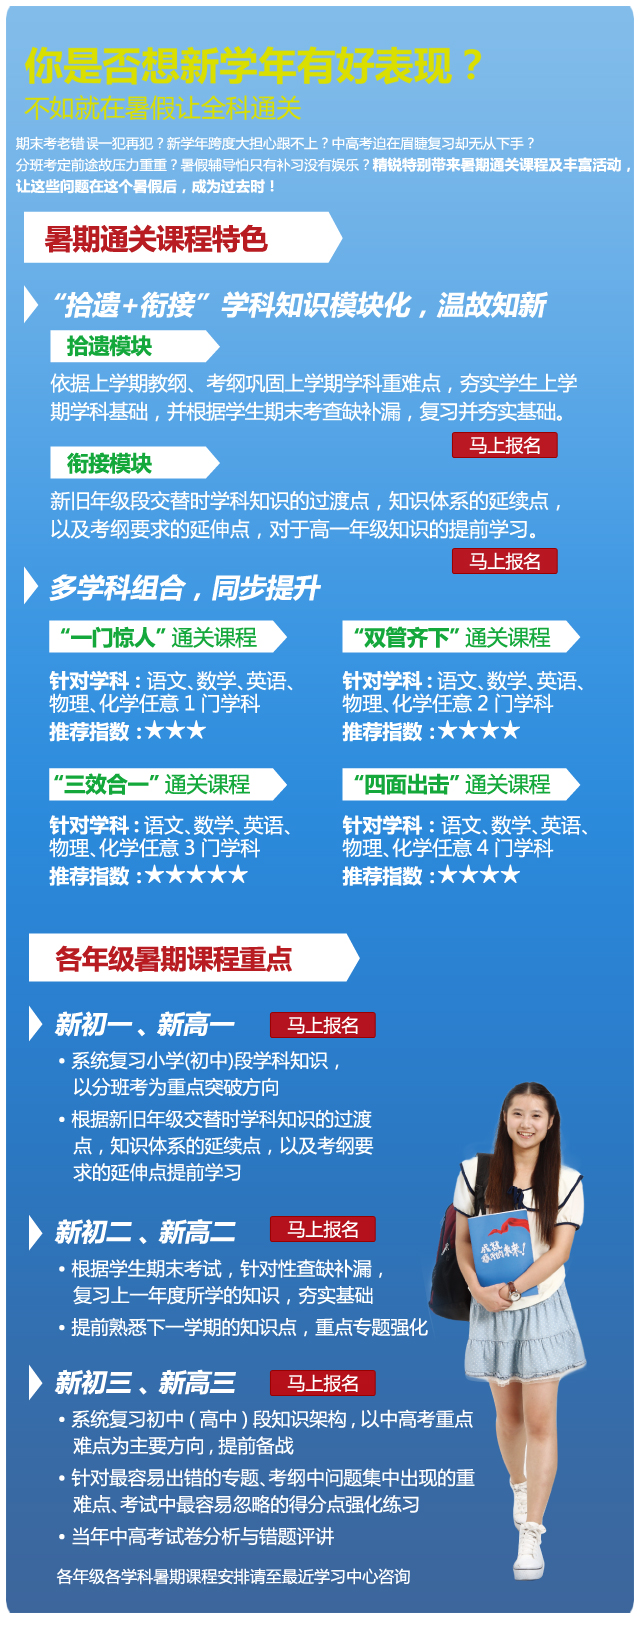 2018北京精锐教育中小学寒假一对一辅导培训课程校区及咨询电话多少?